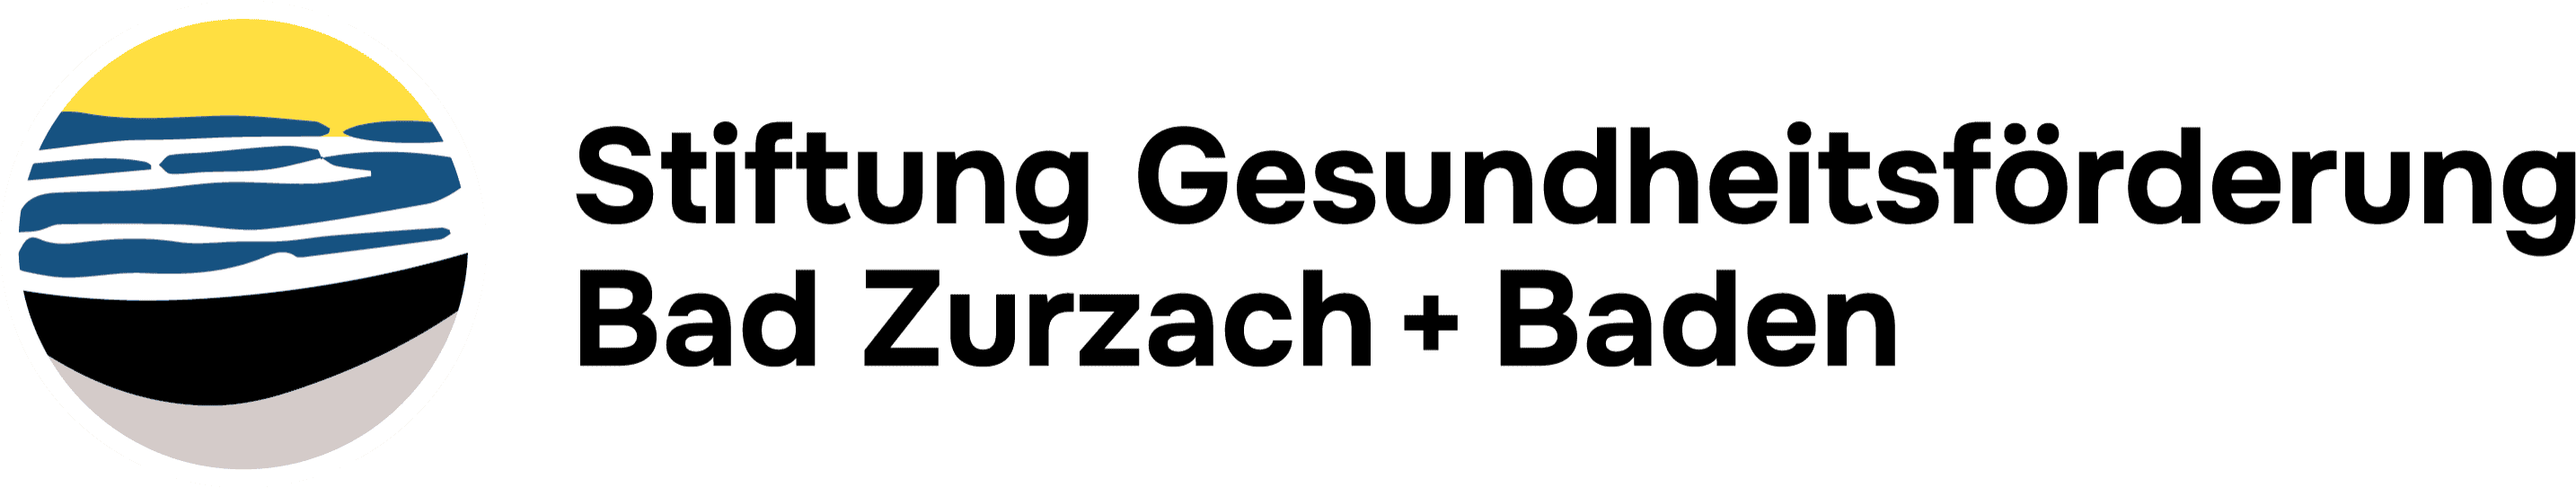 Stiftung Gesundheitsförderung Bad Zurzach + Baden